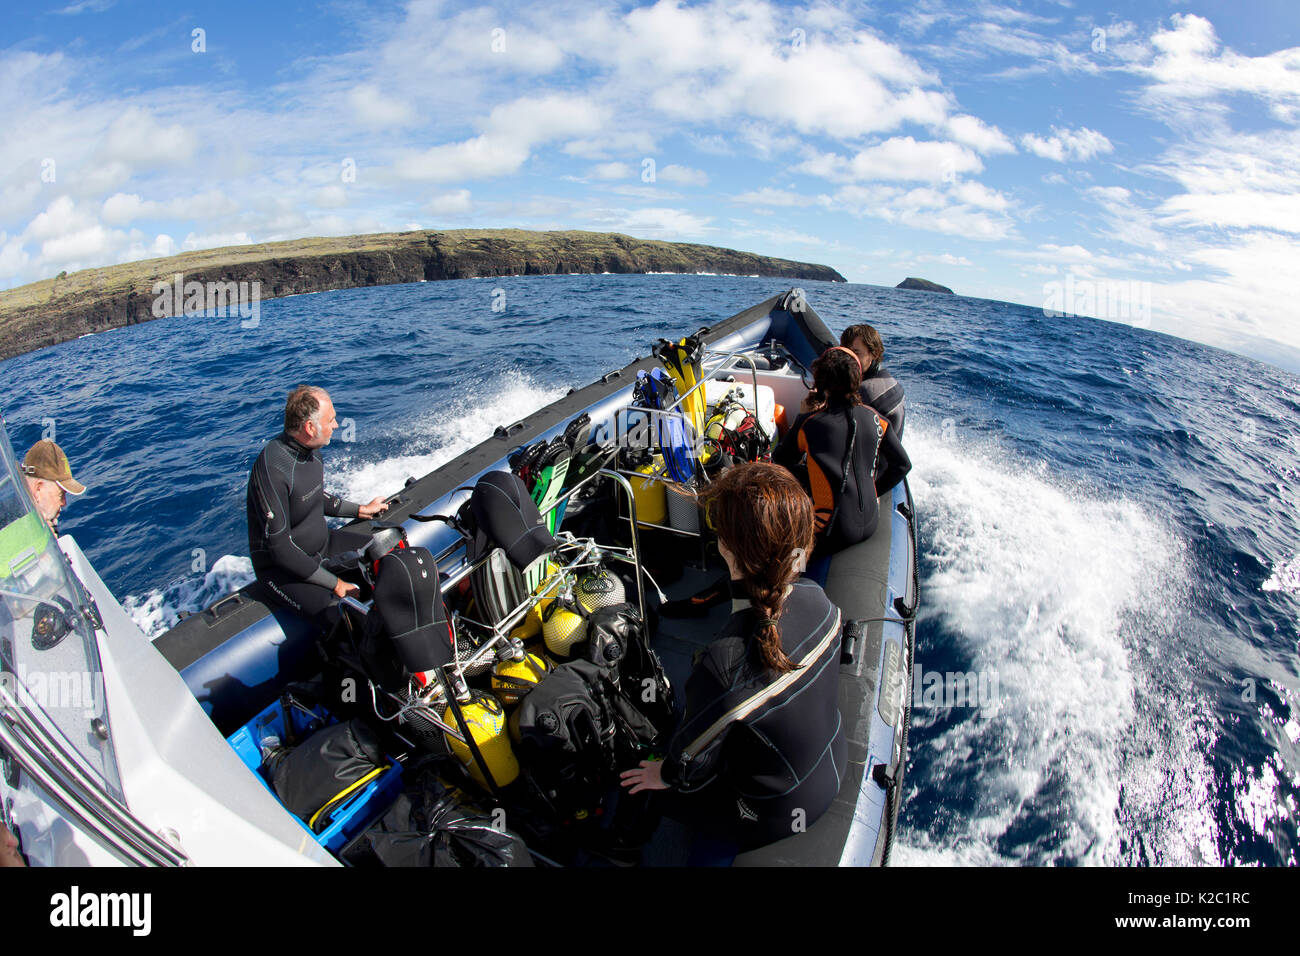 Groupe de plongeurs sur un zodiaque RIB, Santa Maria Petit lighthous à Formigas Islet, Açores, Portugal, Océan Atlantique, octobre 2012. Banque D'Images